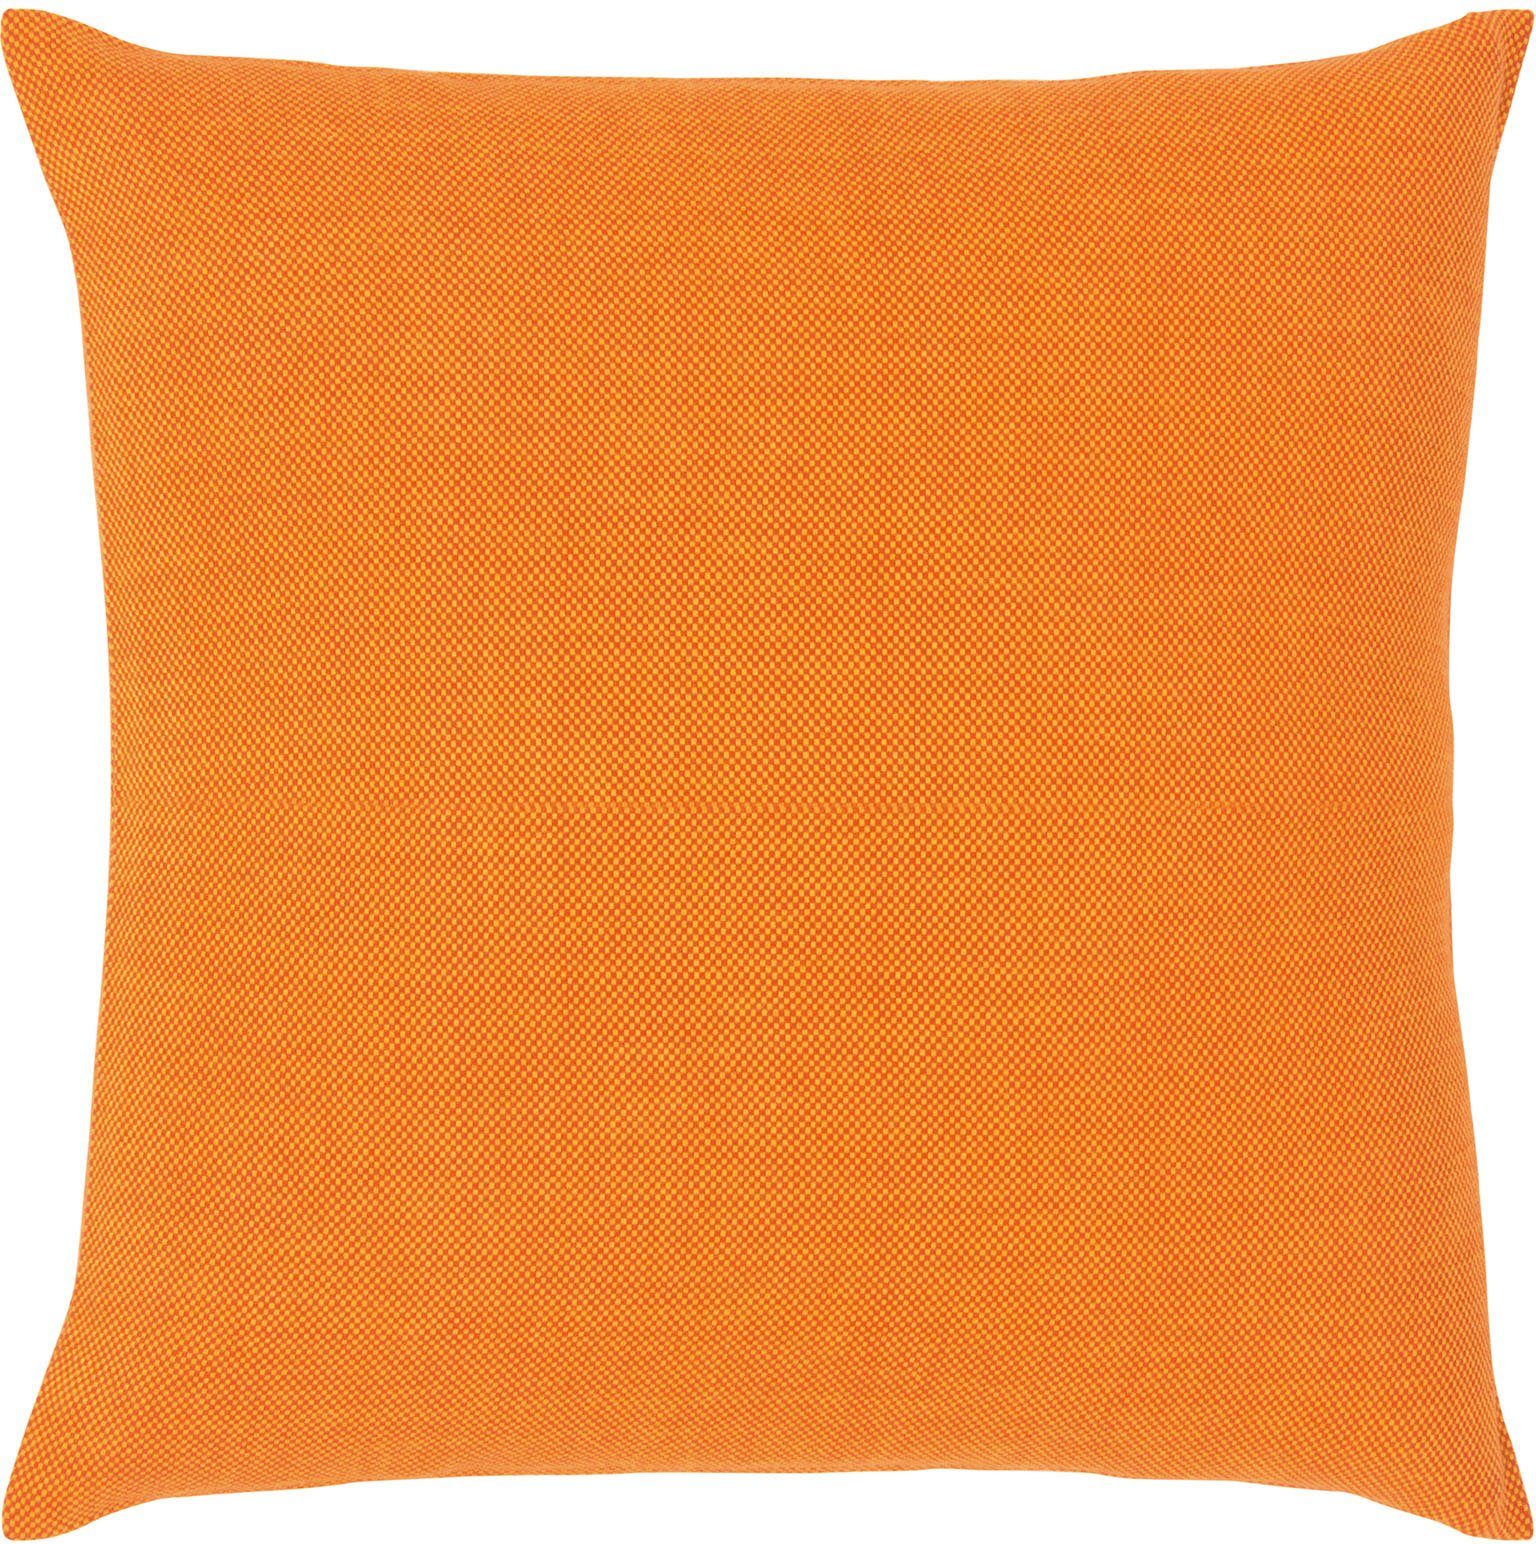 PAD Dekokissen Risotto, einzigartiges Design orange